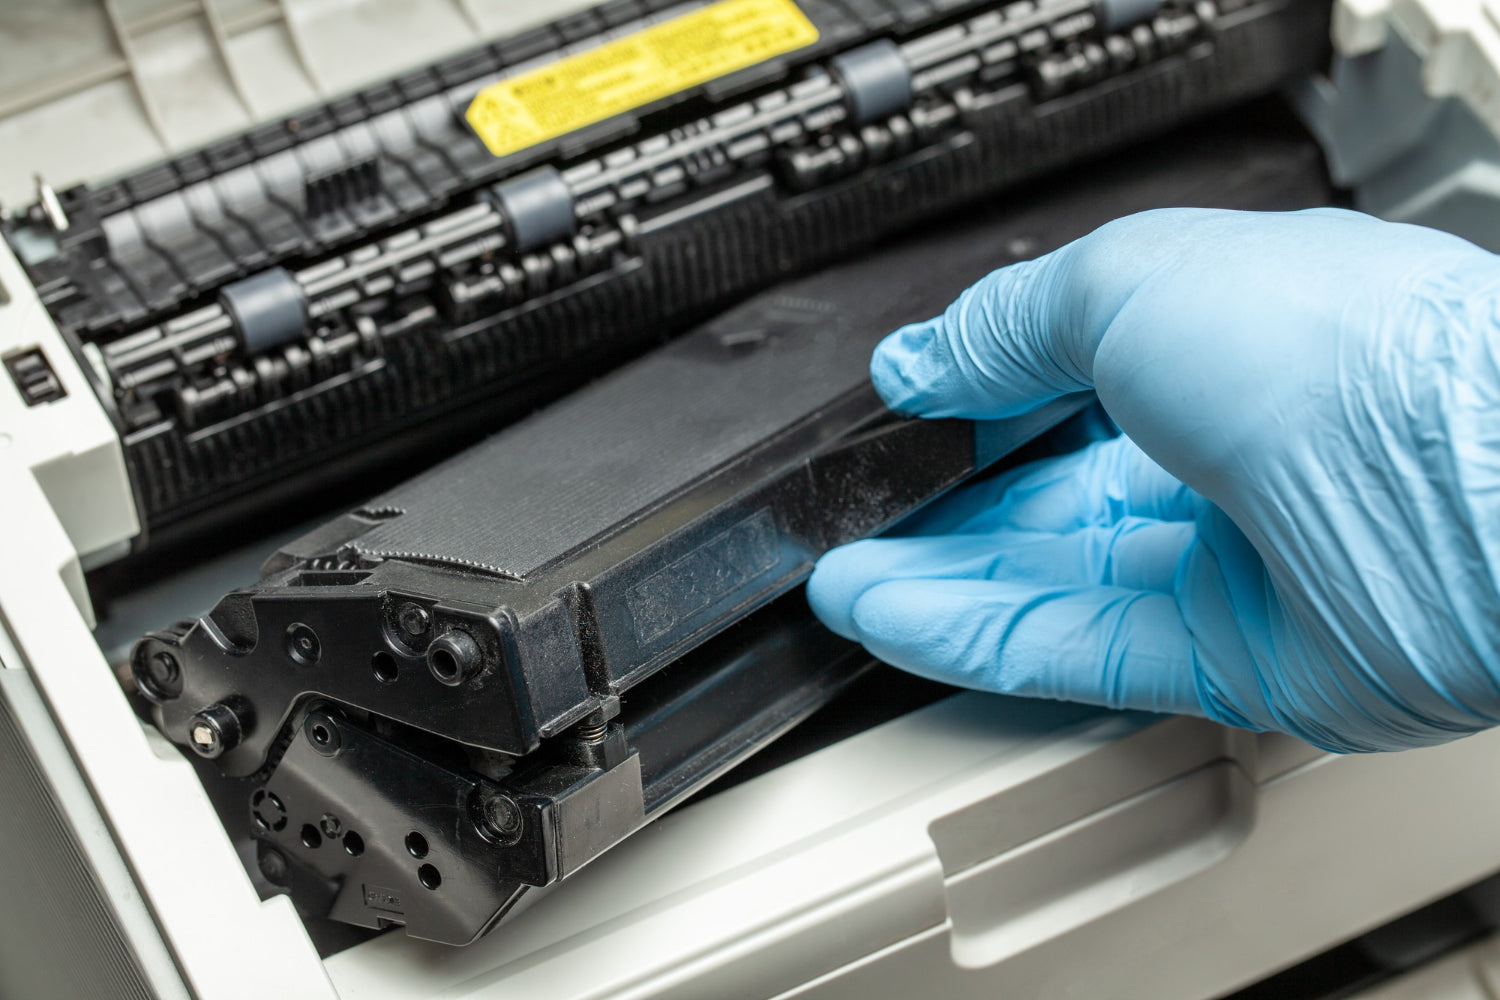 Cartridge Error in an HP Printer